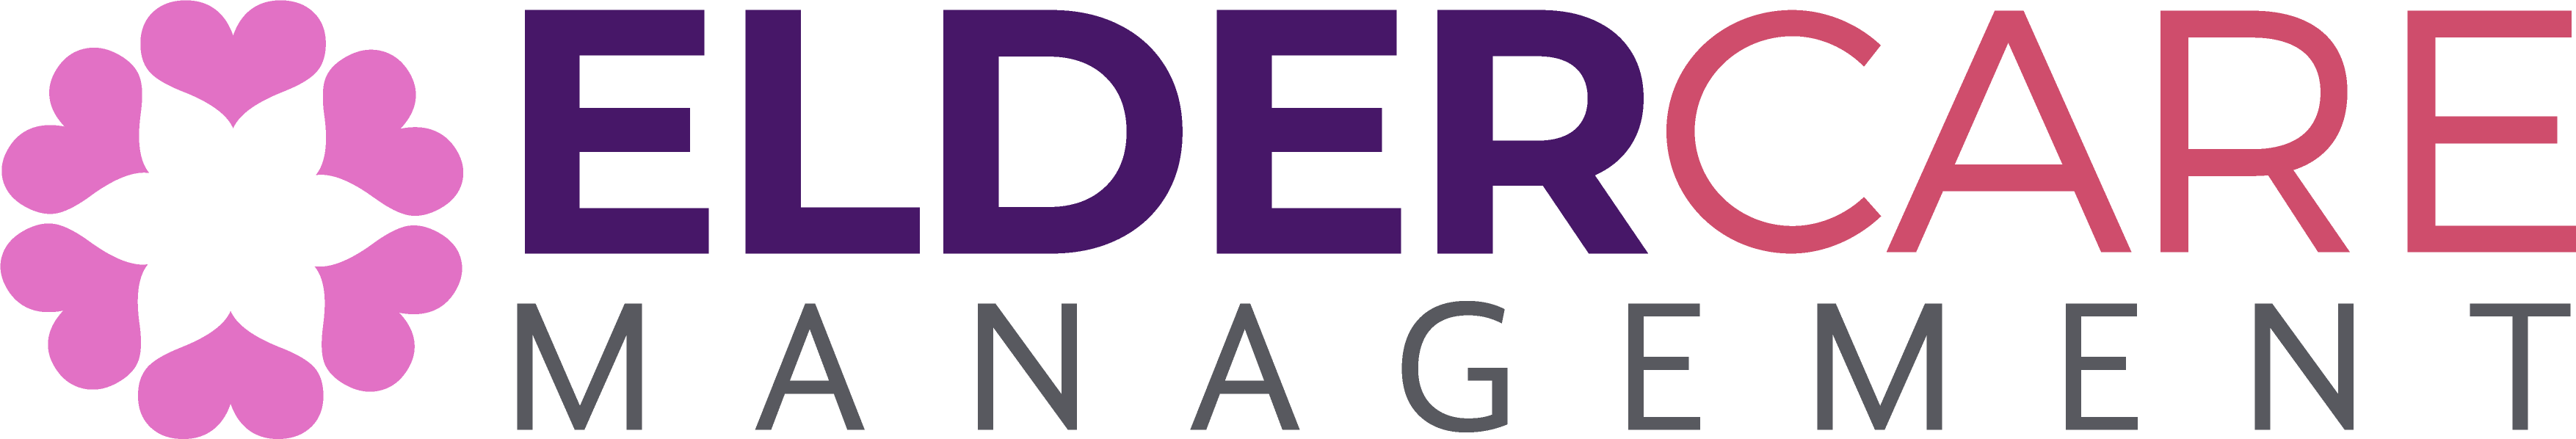 Elder Care Management [logo]